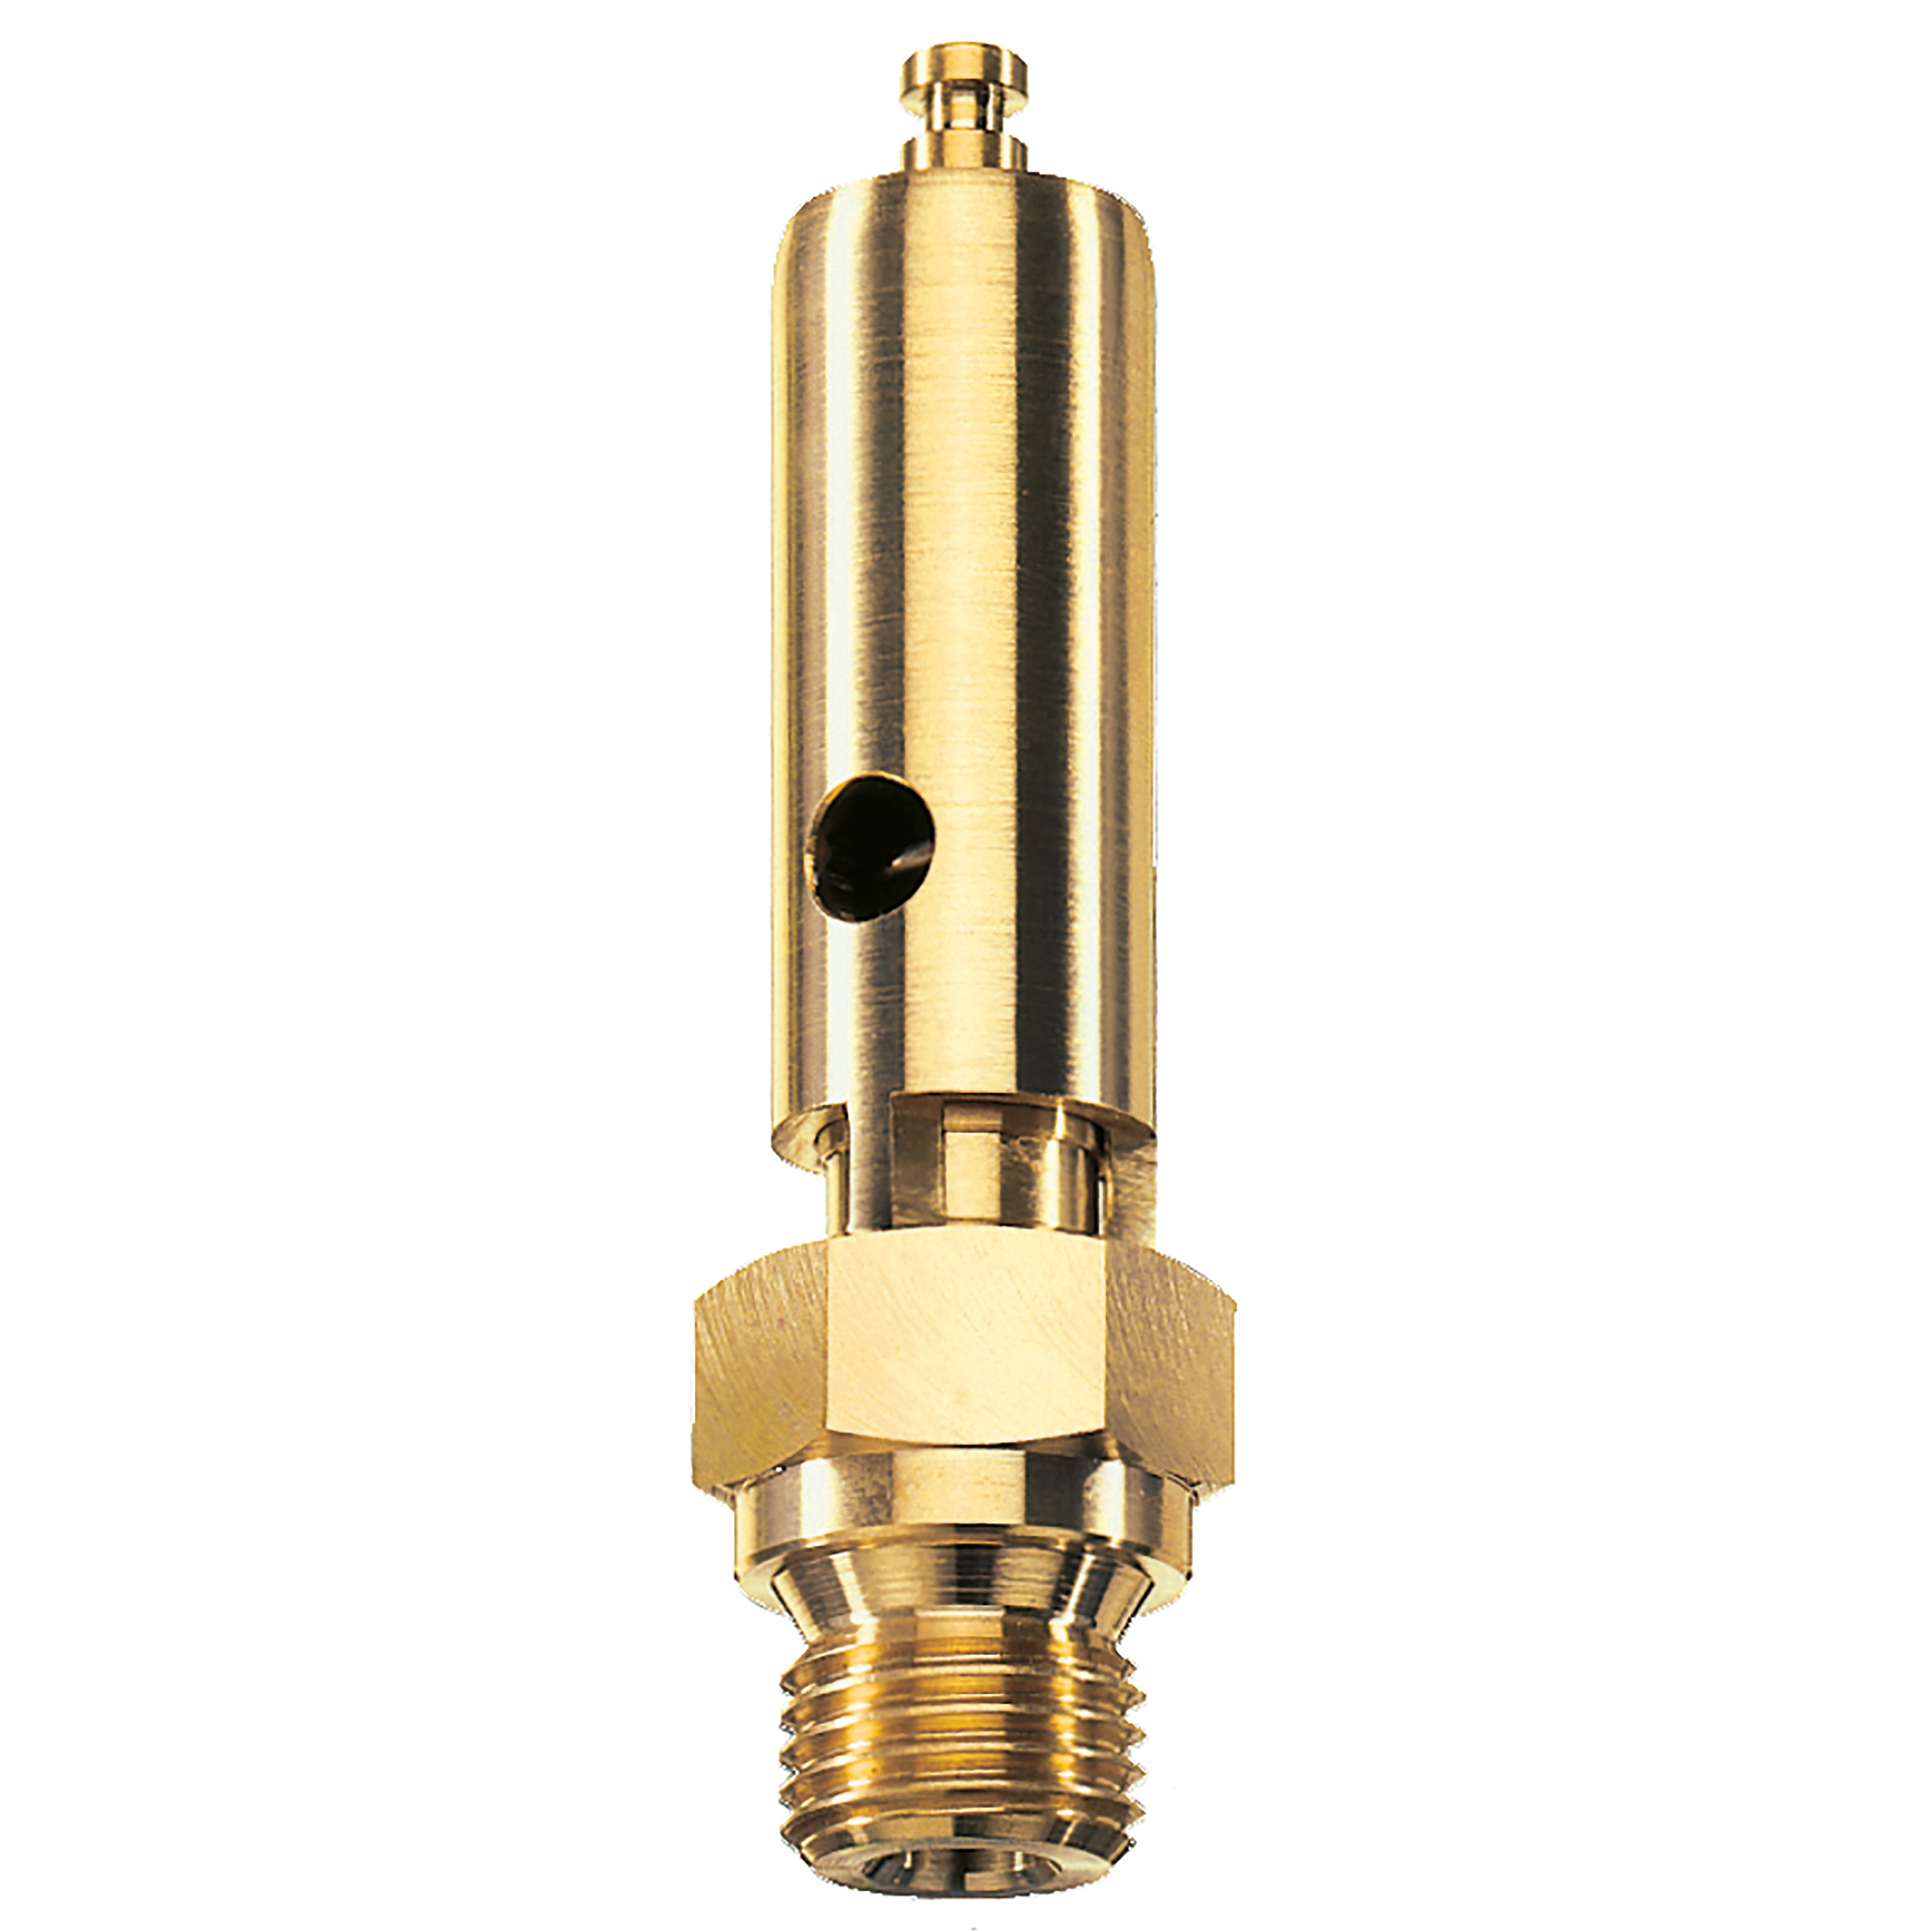 Savety valve component tested DN 6, G¼, L: 60 mm, seal: FKM, set pressure: 11.6 bar (168,2 psi), TÜV approval